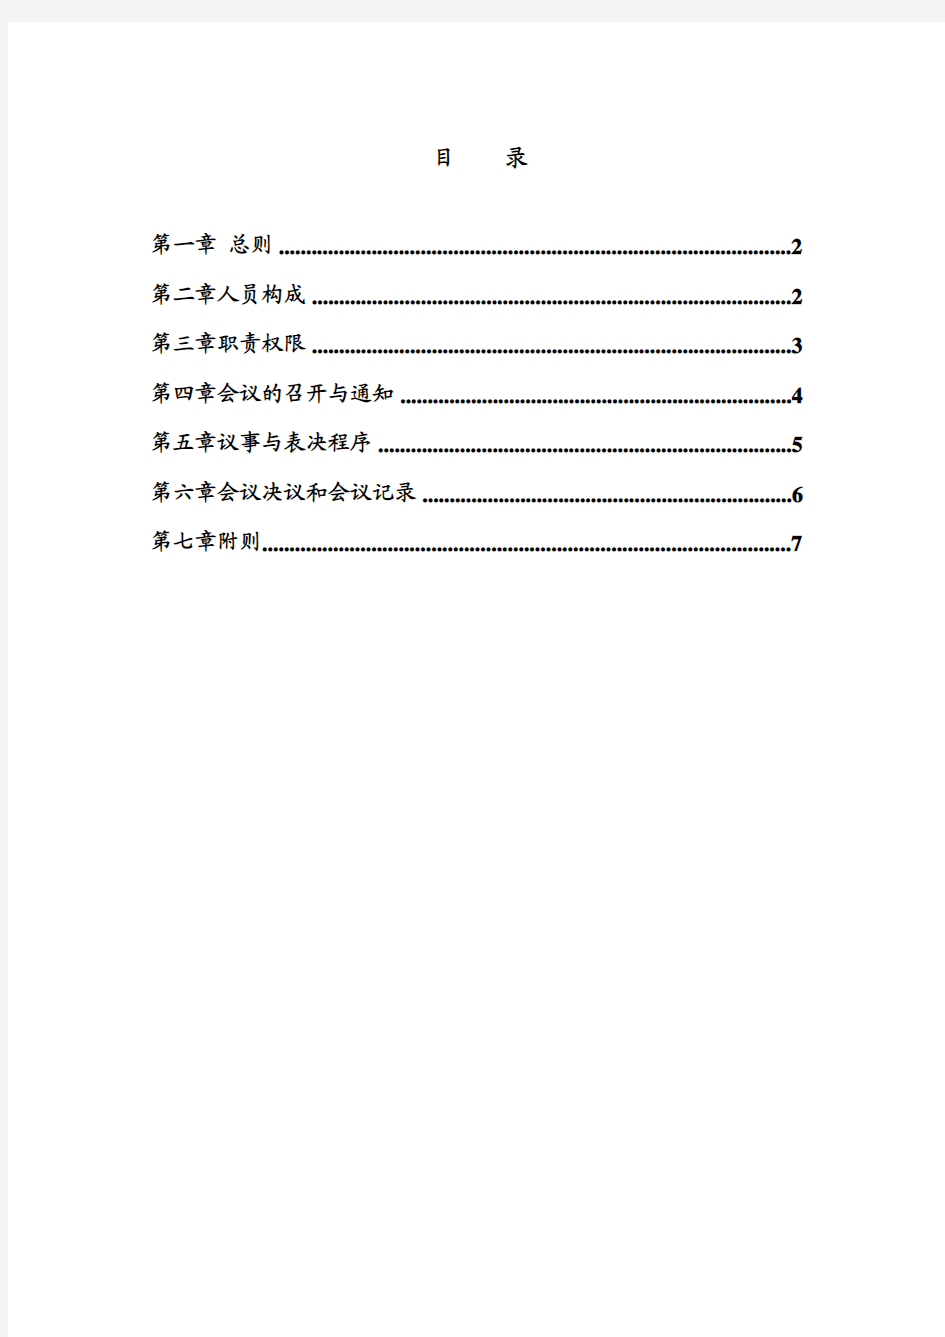 深圳大族激光科技公司薪酬与考核委员会议事规则(pdf)